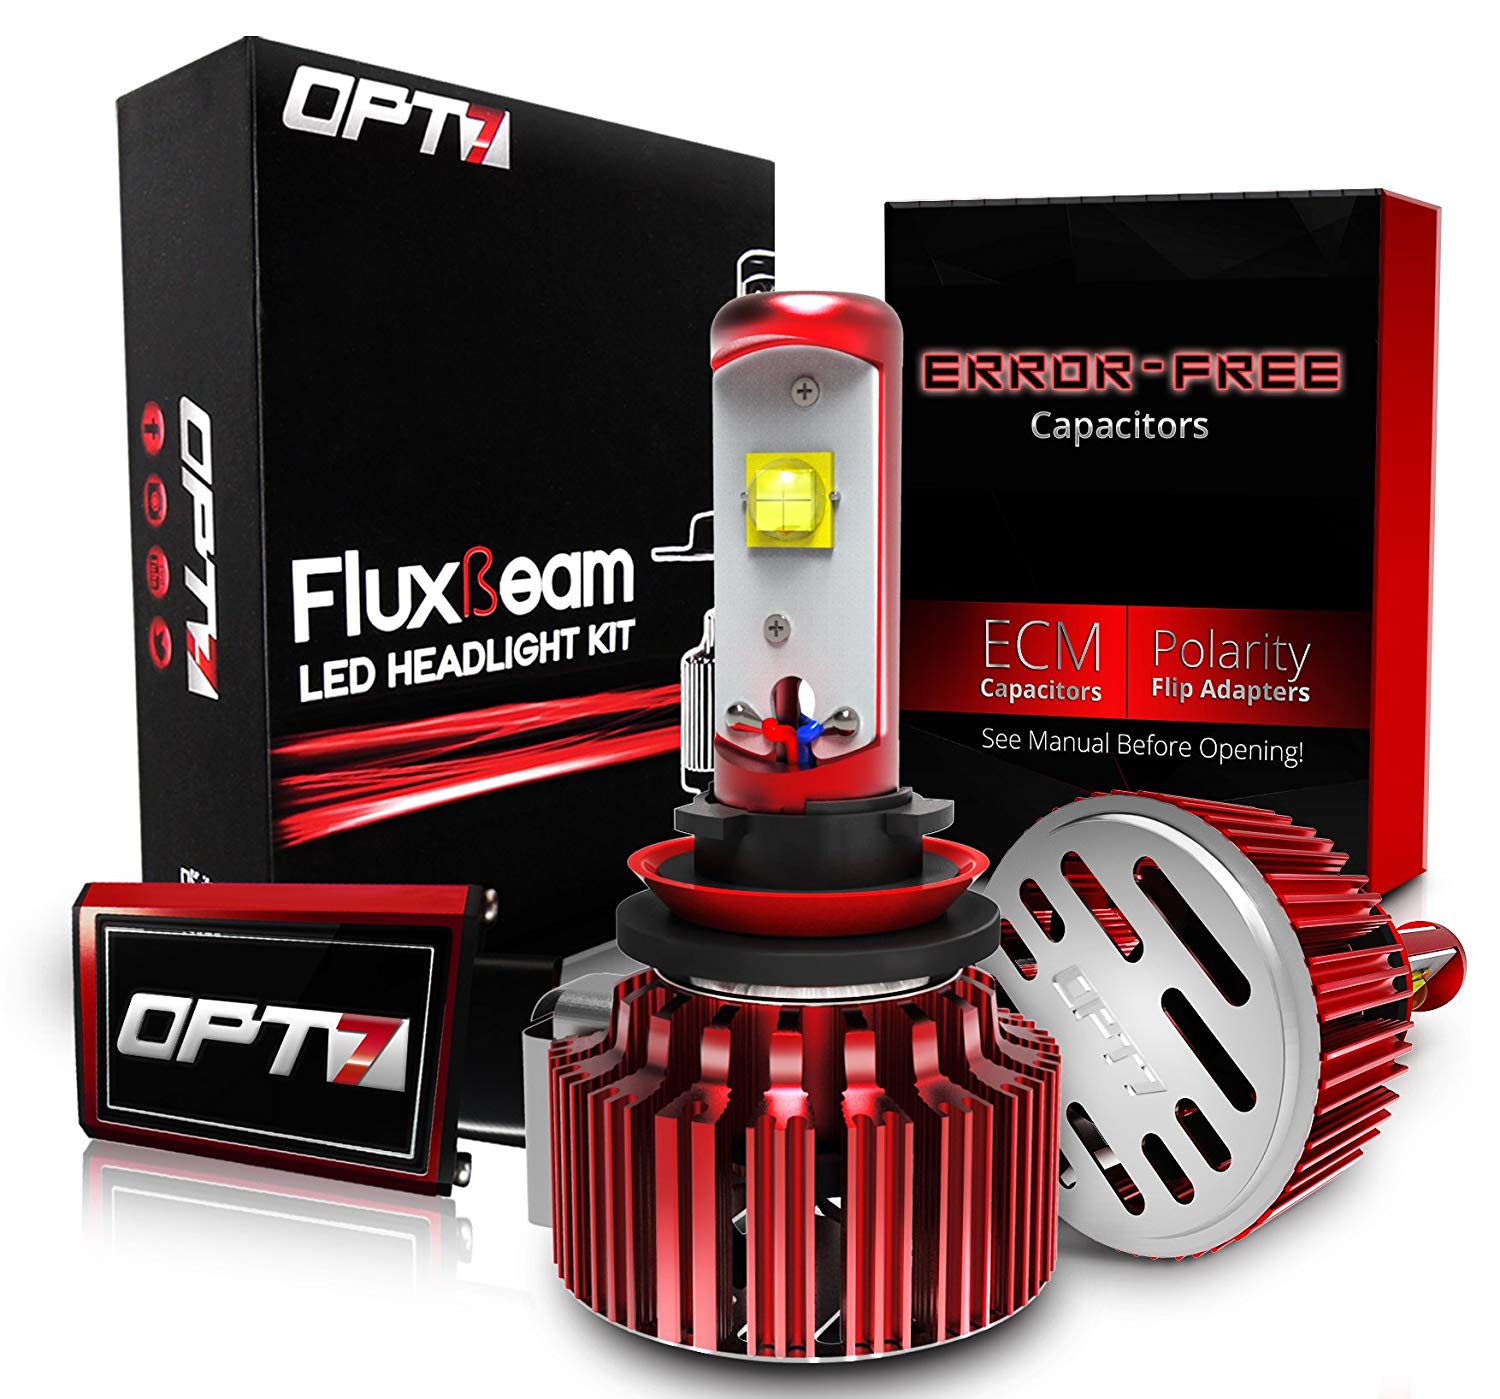 OPT7 FluxBeam LED Headlight Kit